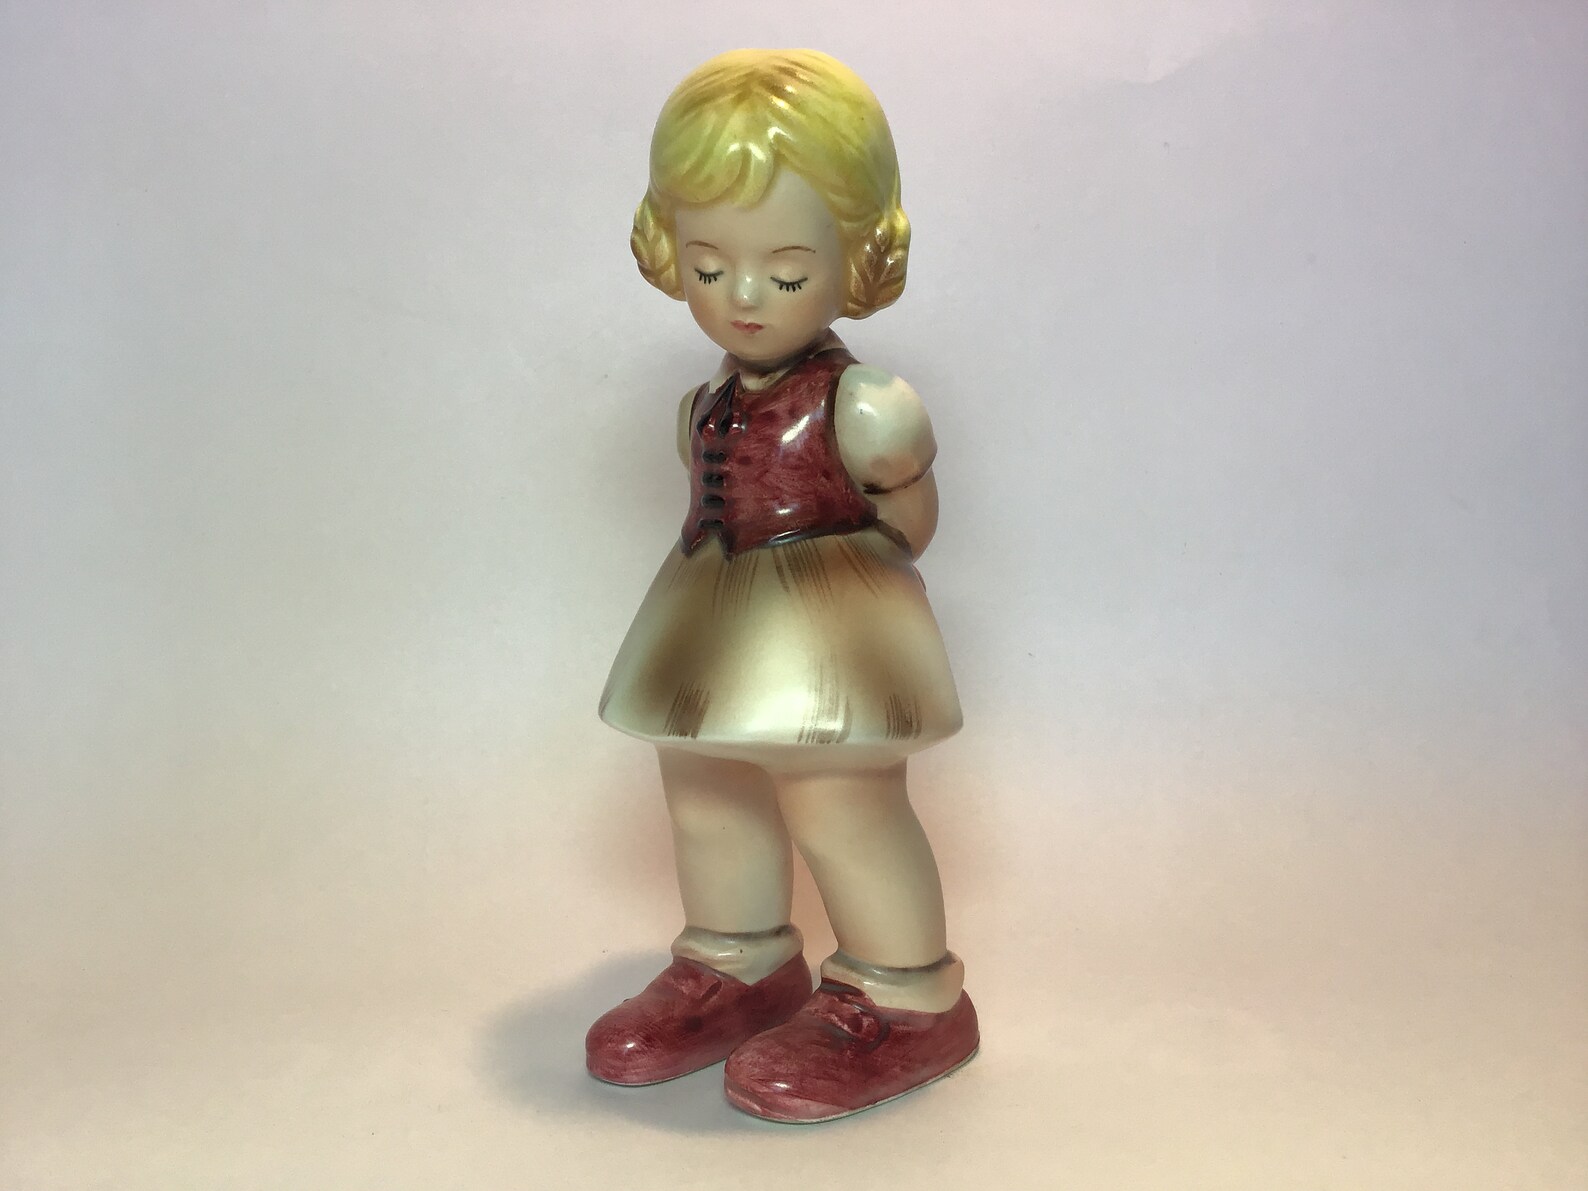 1950s Inarco Gretel Ceramic Figurine. Rare Model E-1691. | Etsy